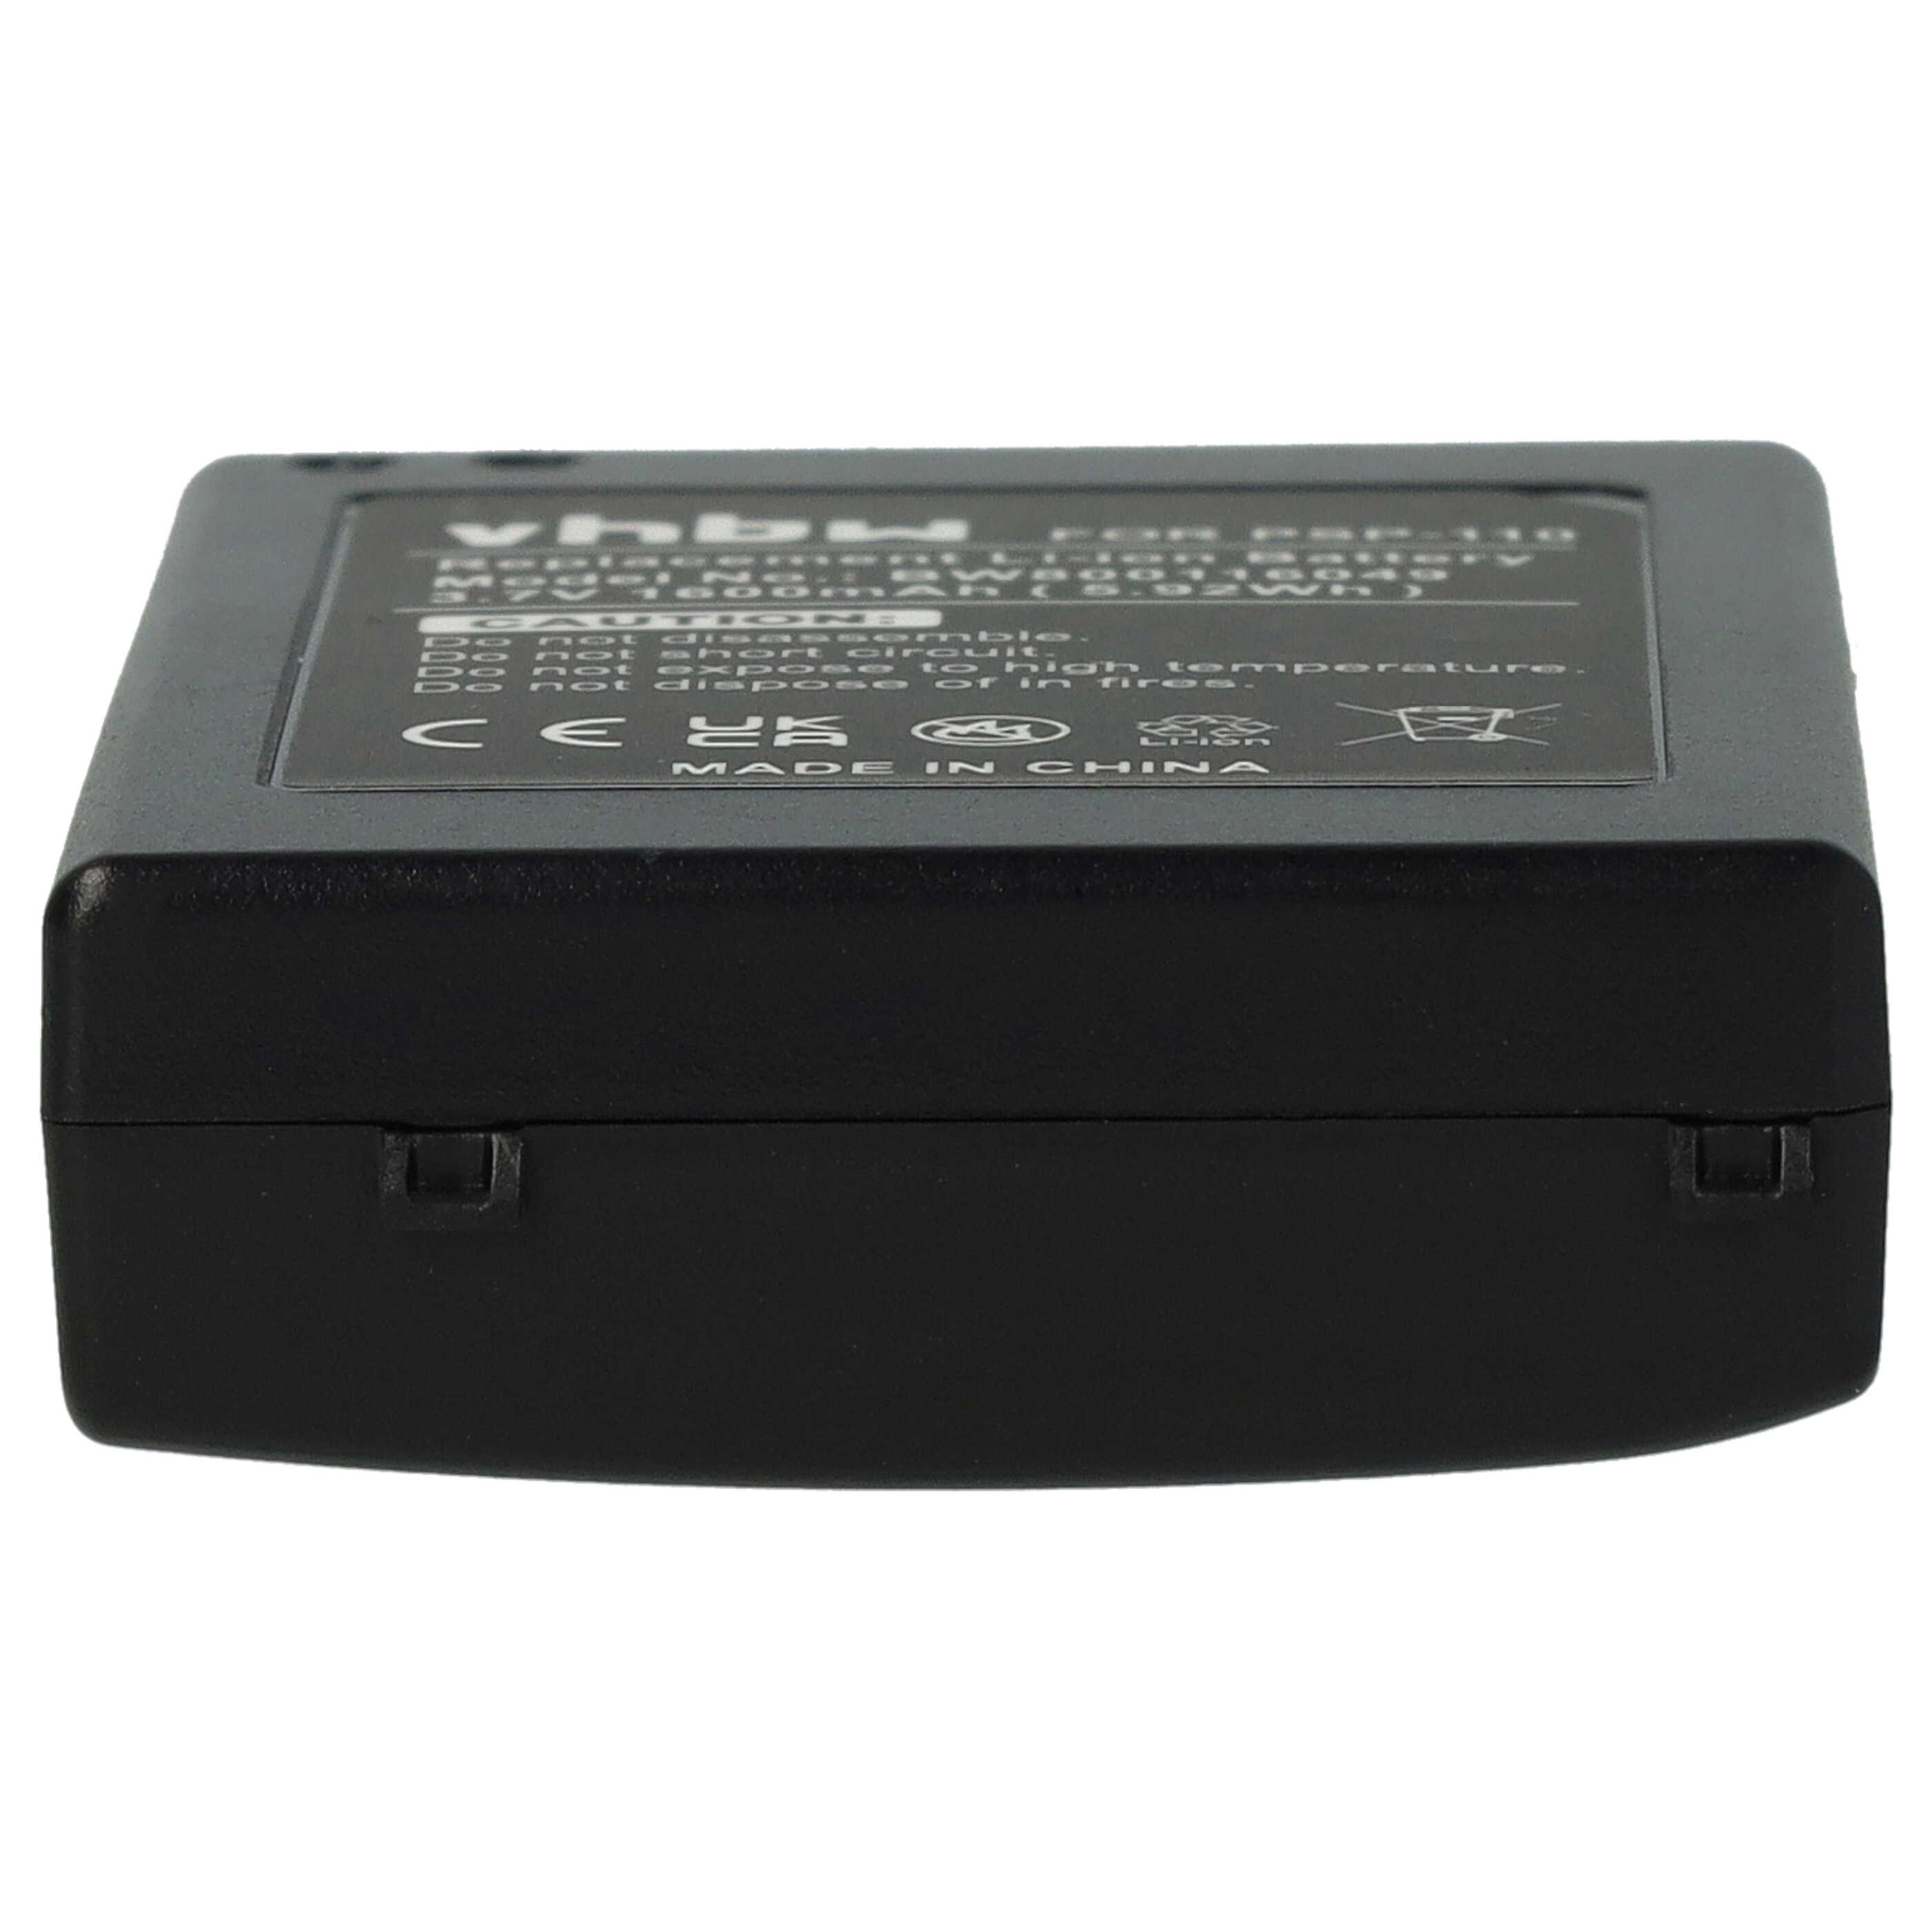 Akumulator do konsoli Sony zamiennik Sony PSP-110, PSP-280G - 1600 mAh, 3,6 V